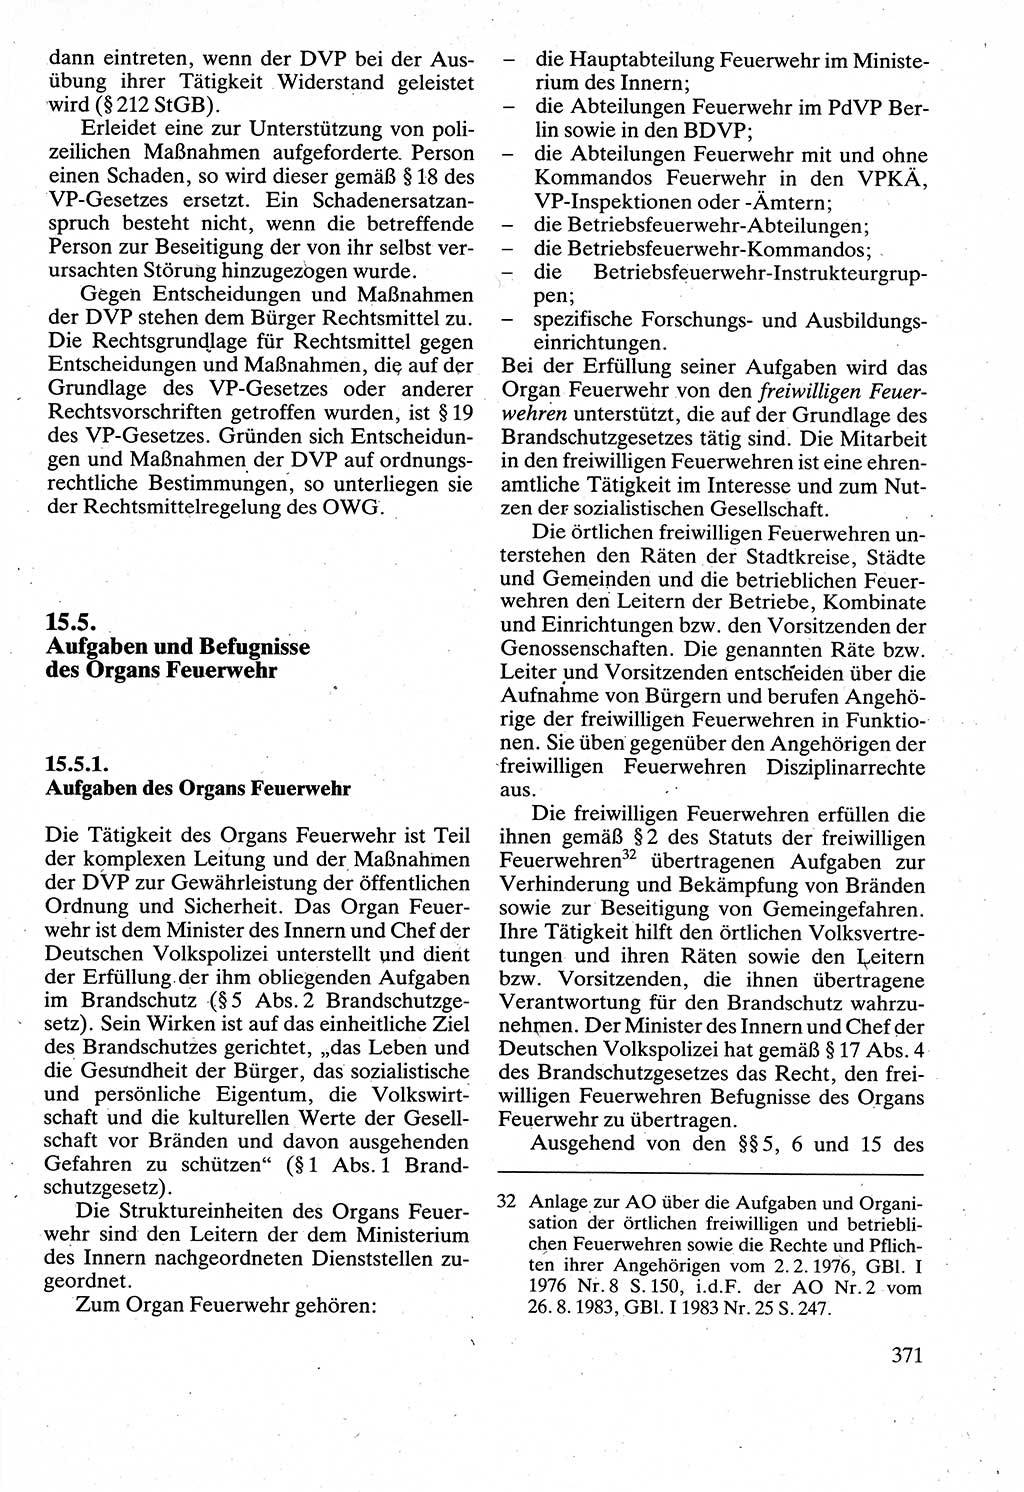 Verwaltungsrecht [Deutsche Demokratische Republik (DDR)], Lehrbuch 1988, Seite 371 (Verw.-R. DDR Lb. 1988, S. 371)